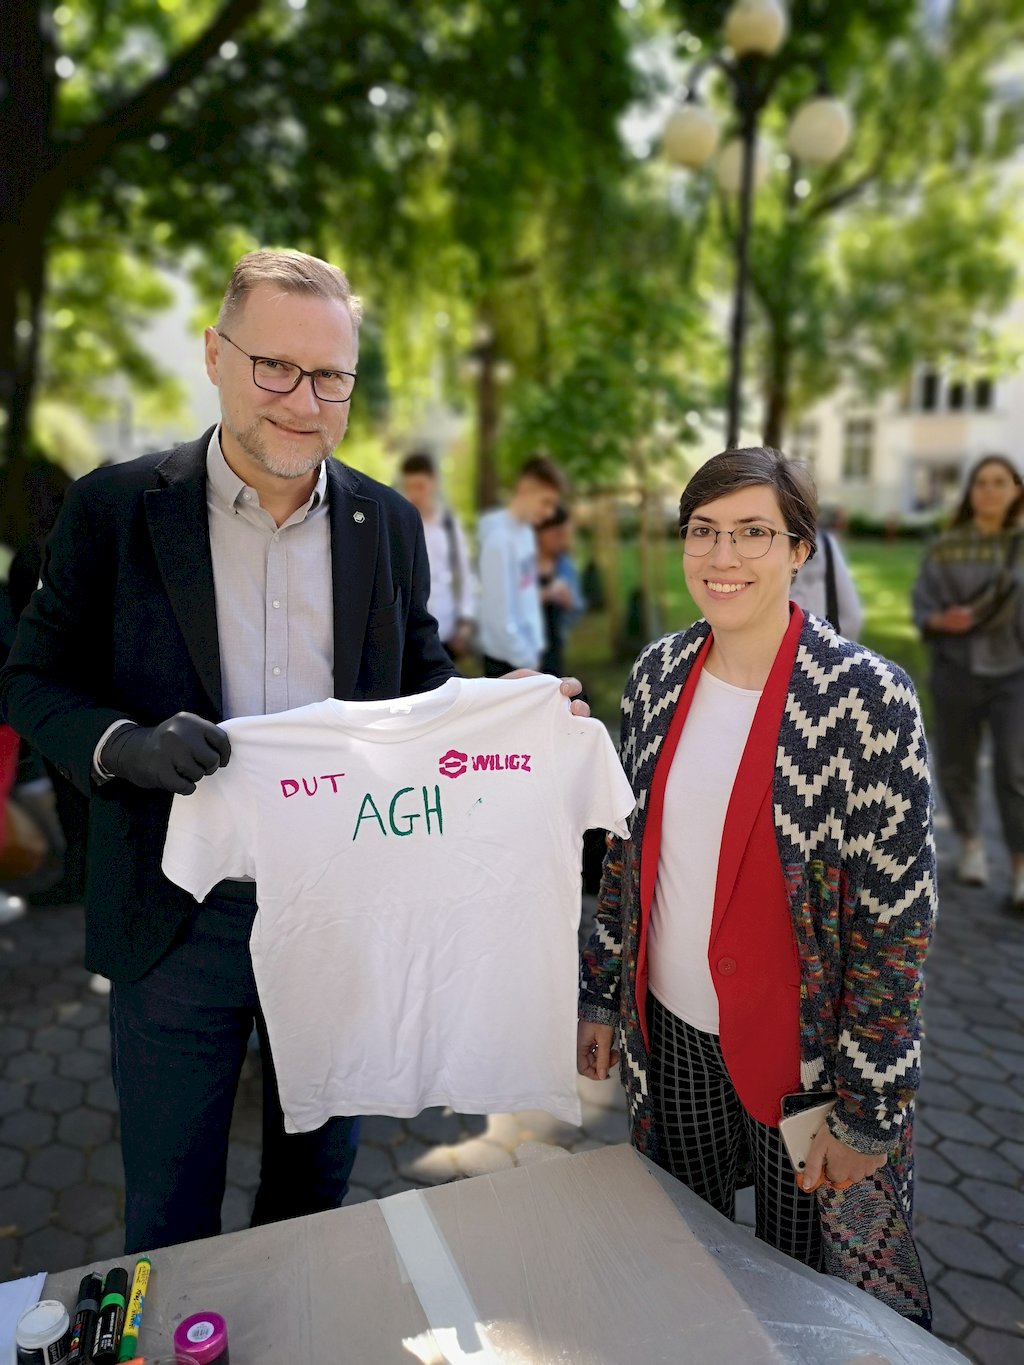 Dziekan prof. Marek Cała prezentuje białą koszulkę z namalowanym napisem AGH WILGZ DUT stojąc obok kobiety w okularach, która ją namalowała.